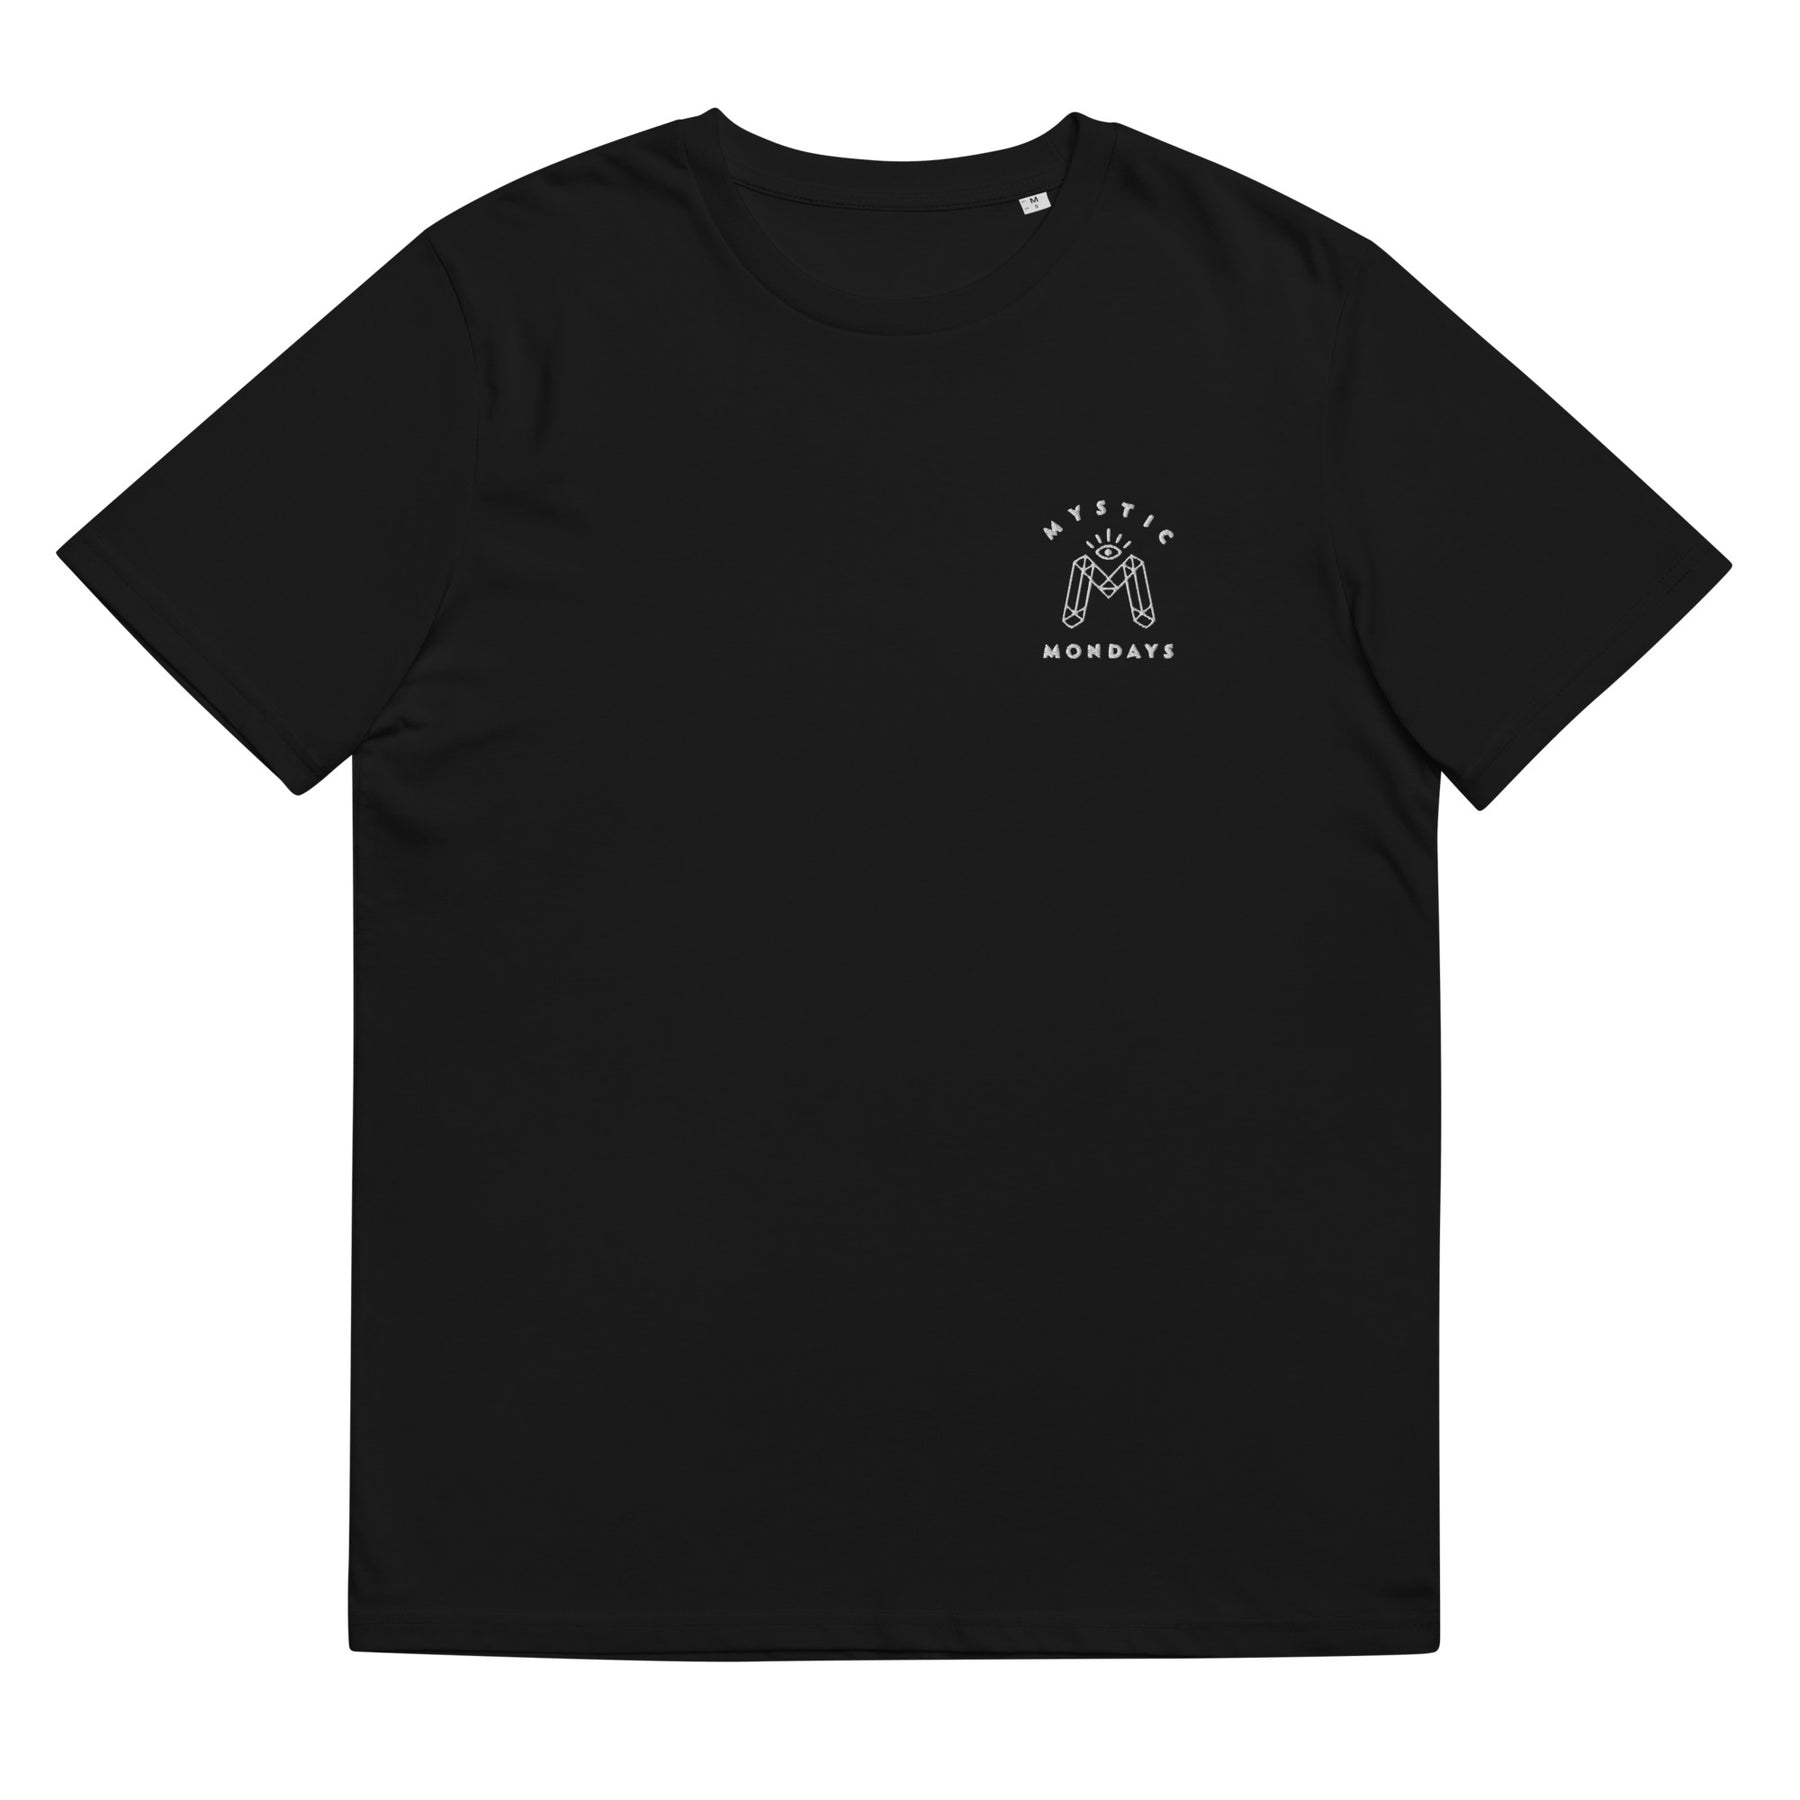 Aquarius Symbol T-shirt